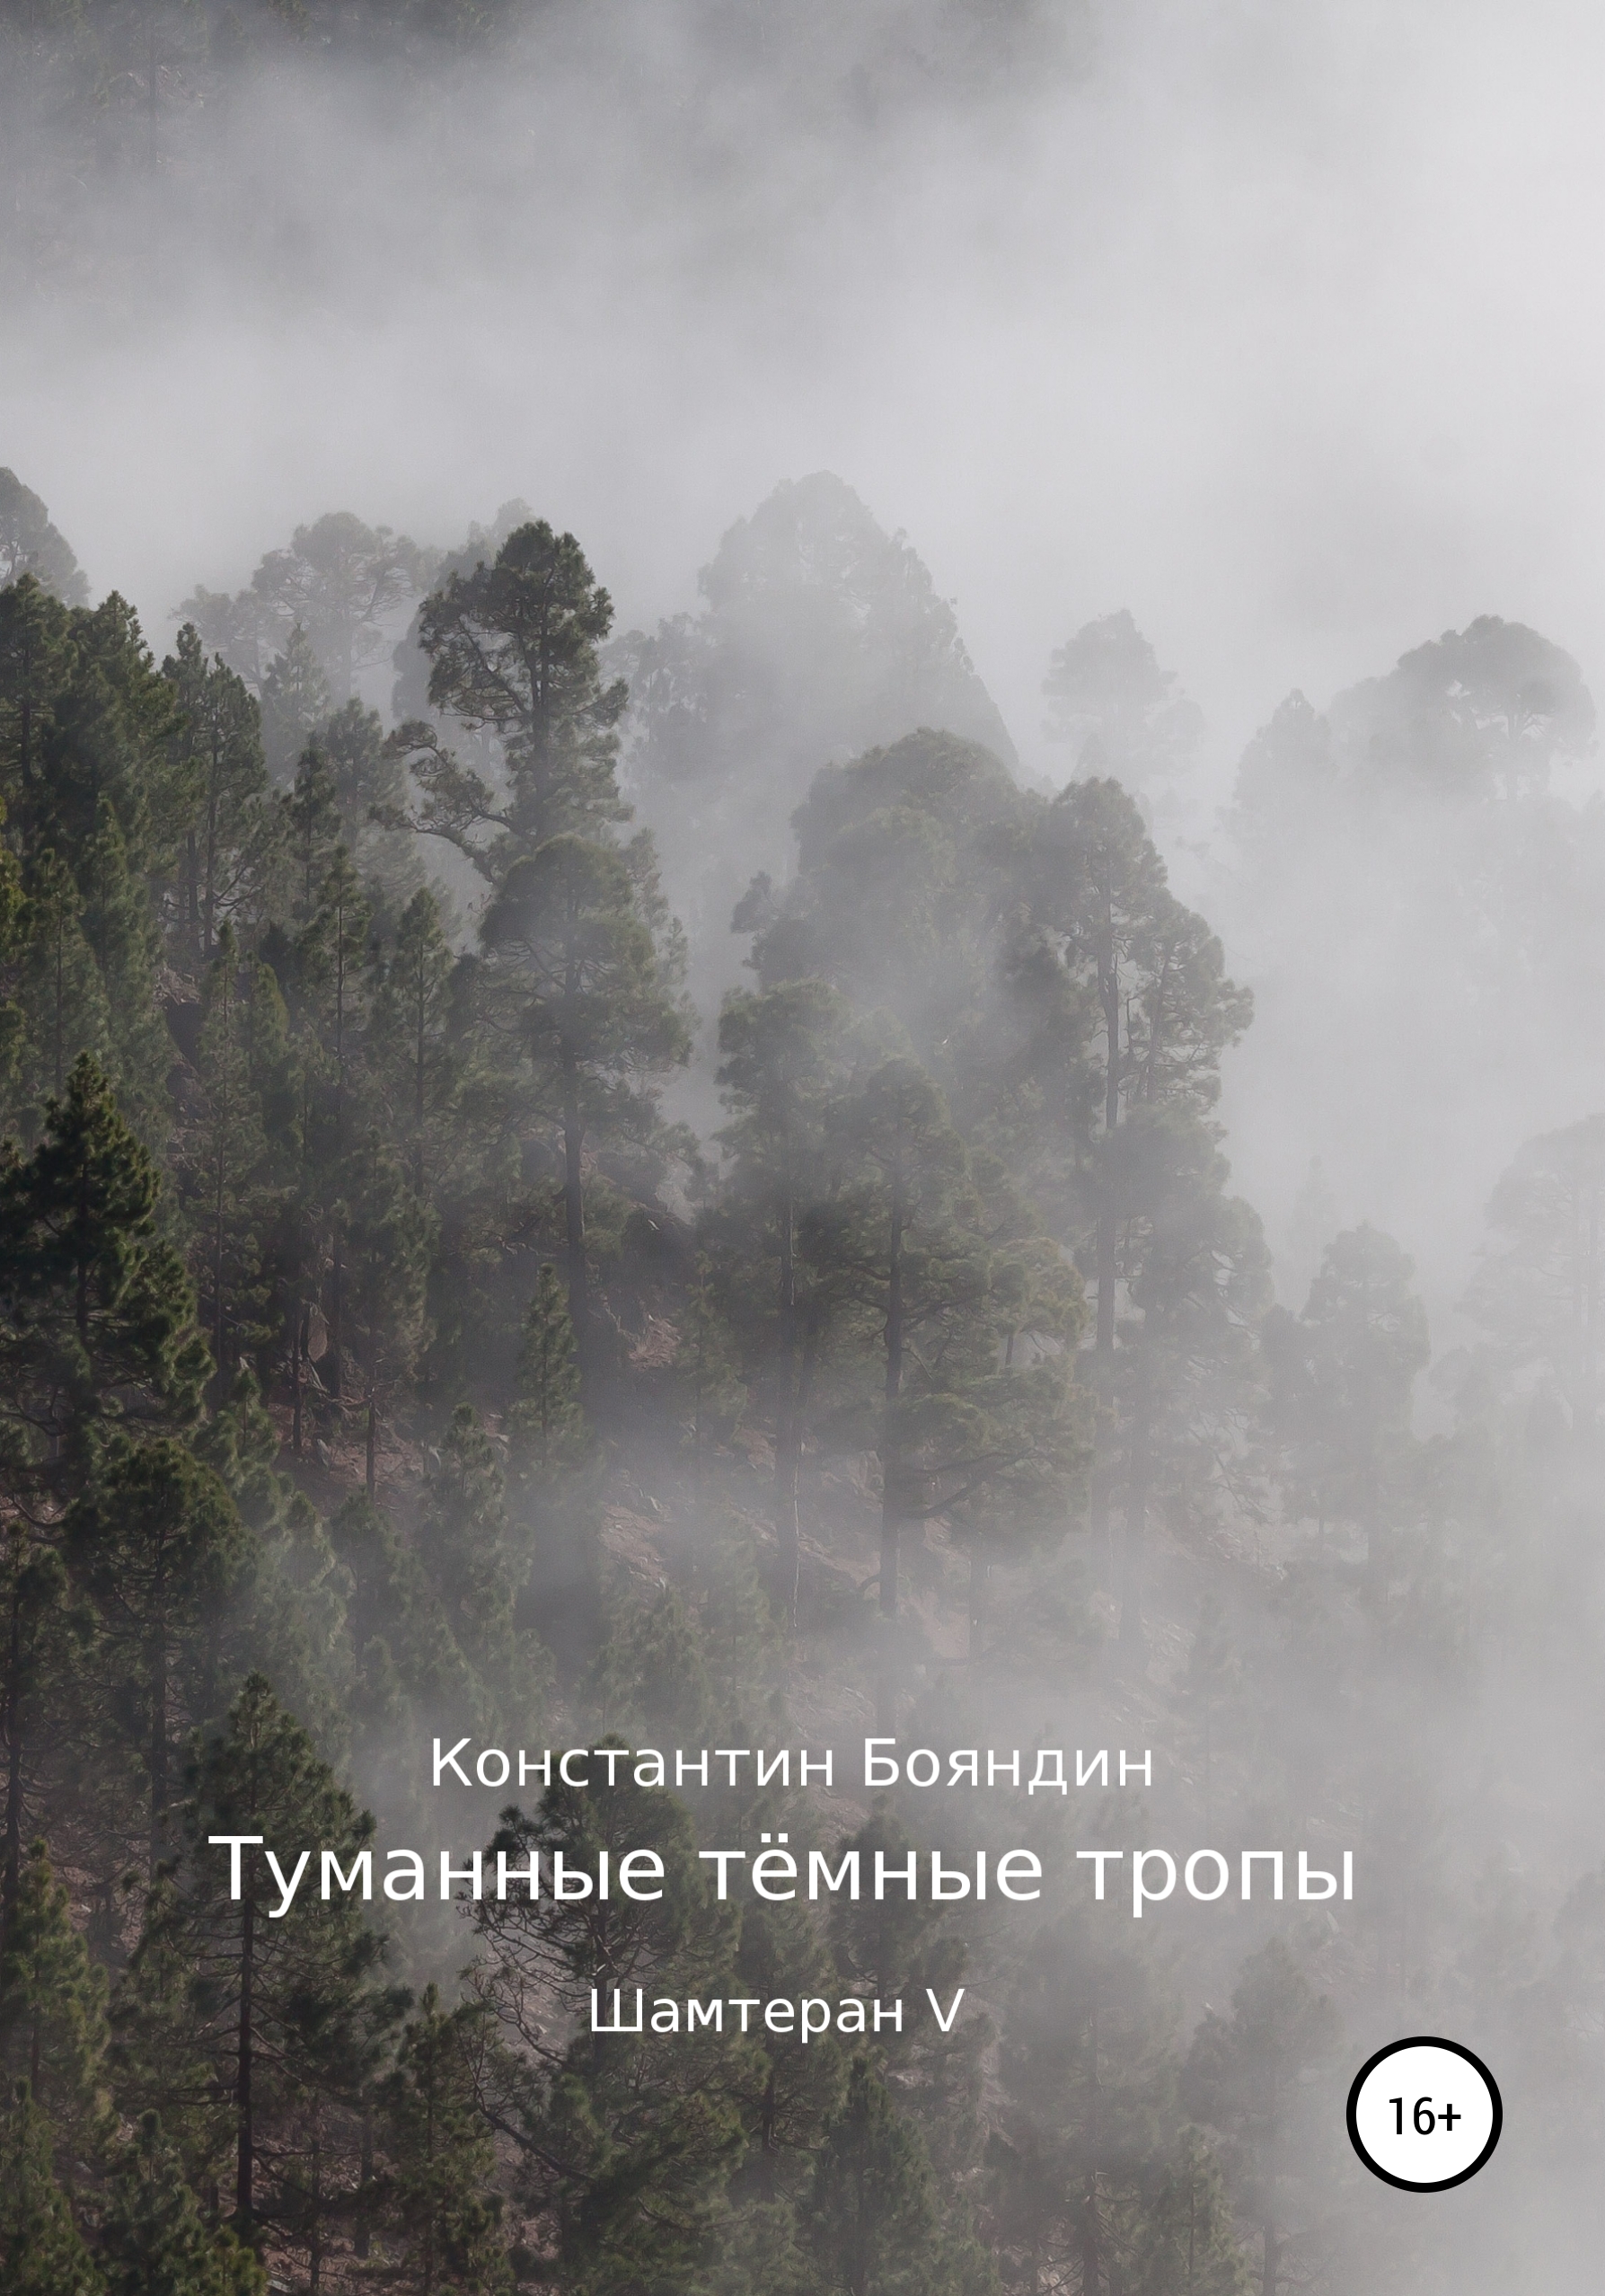 Скачать Туманные тёмные тропы - Константин Бояндин